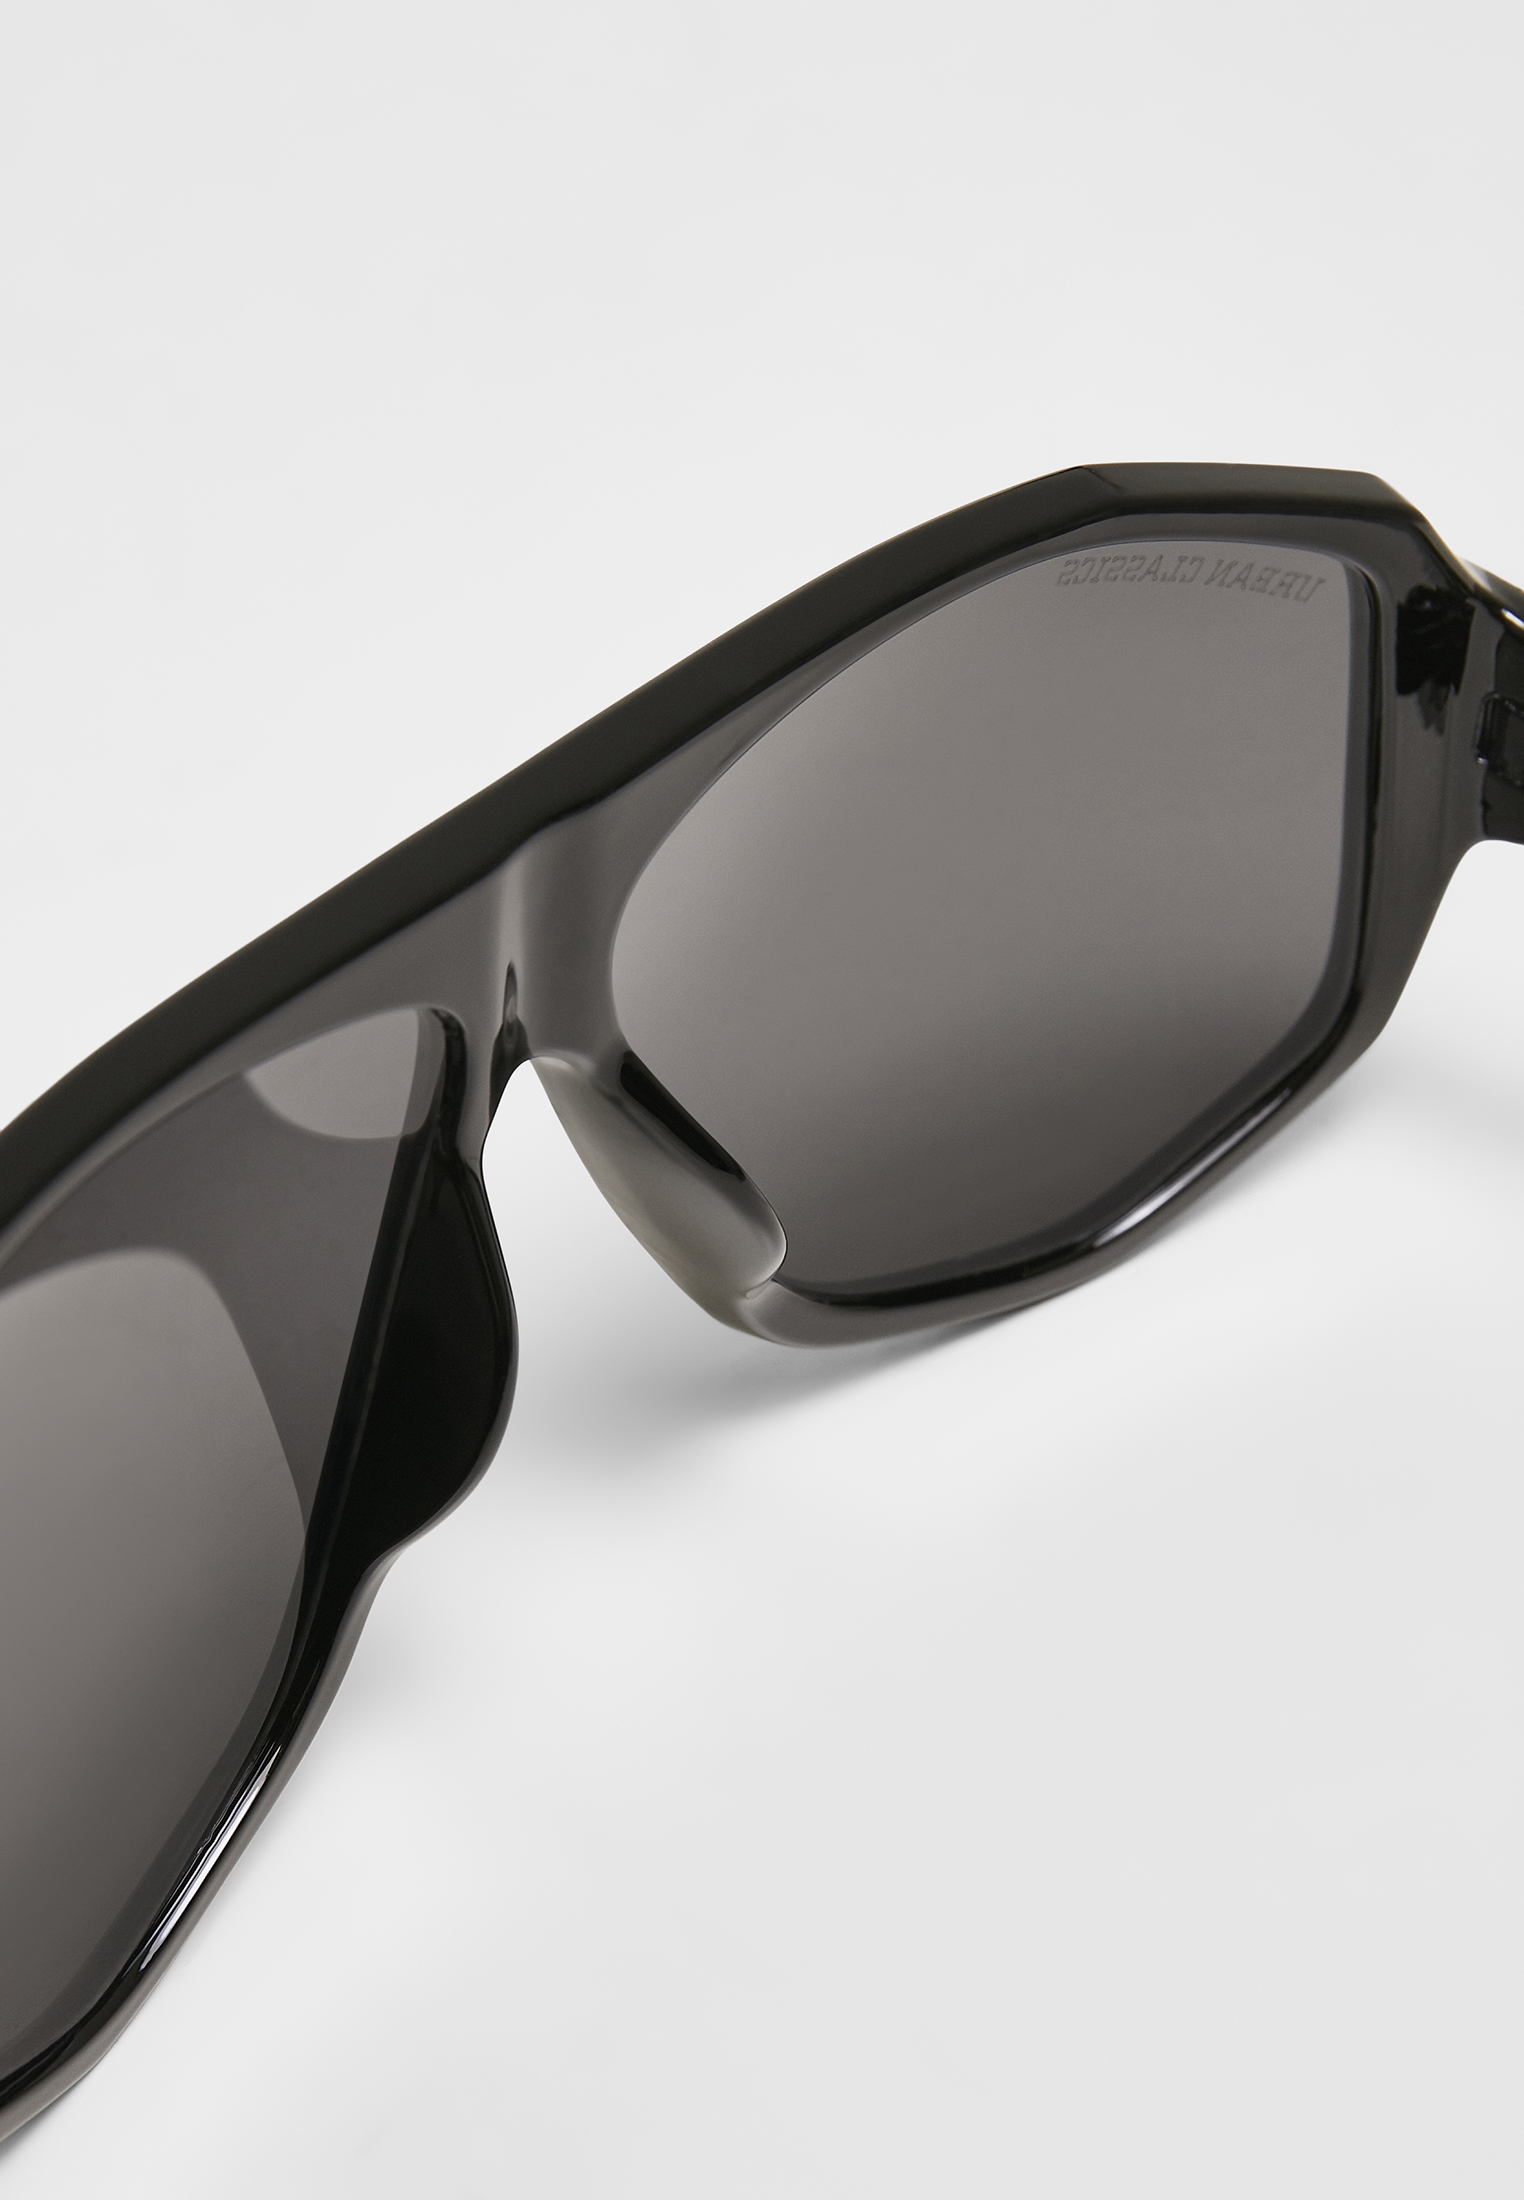 Sonnenbrillen 101 Sunglasses UC in Farbe black/black